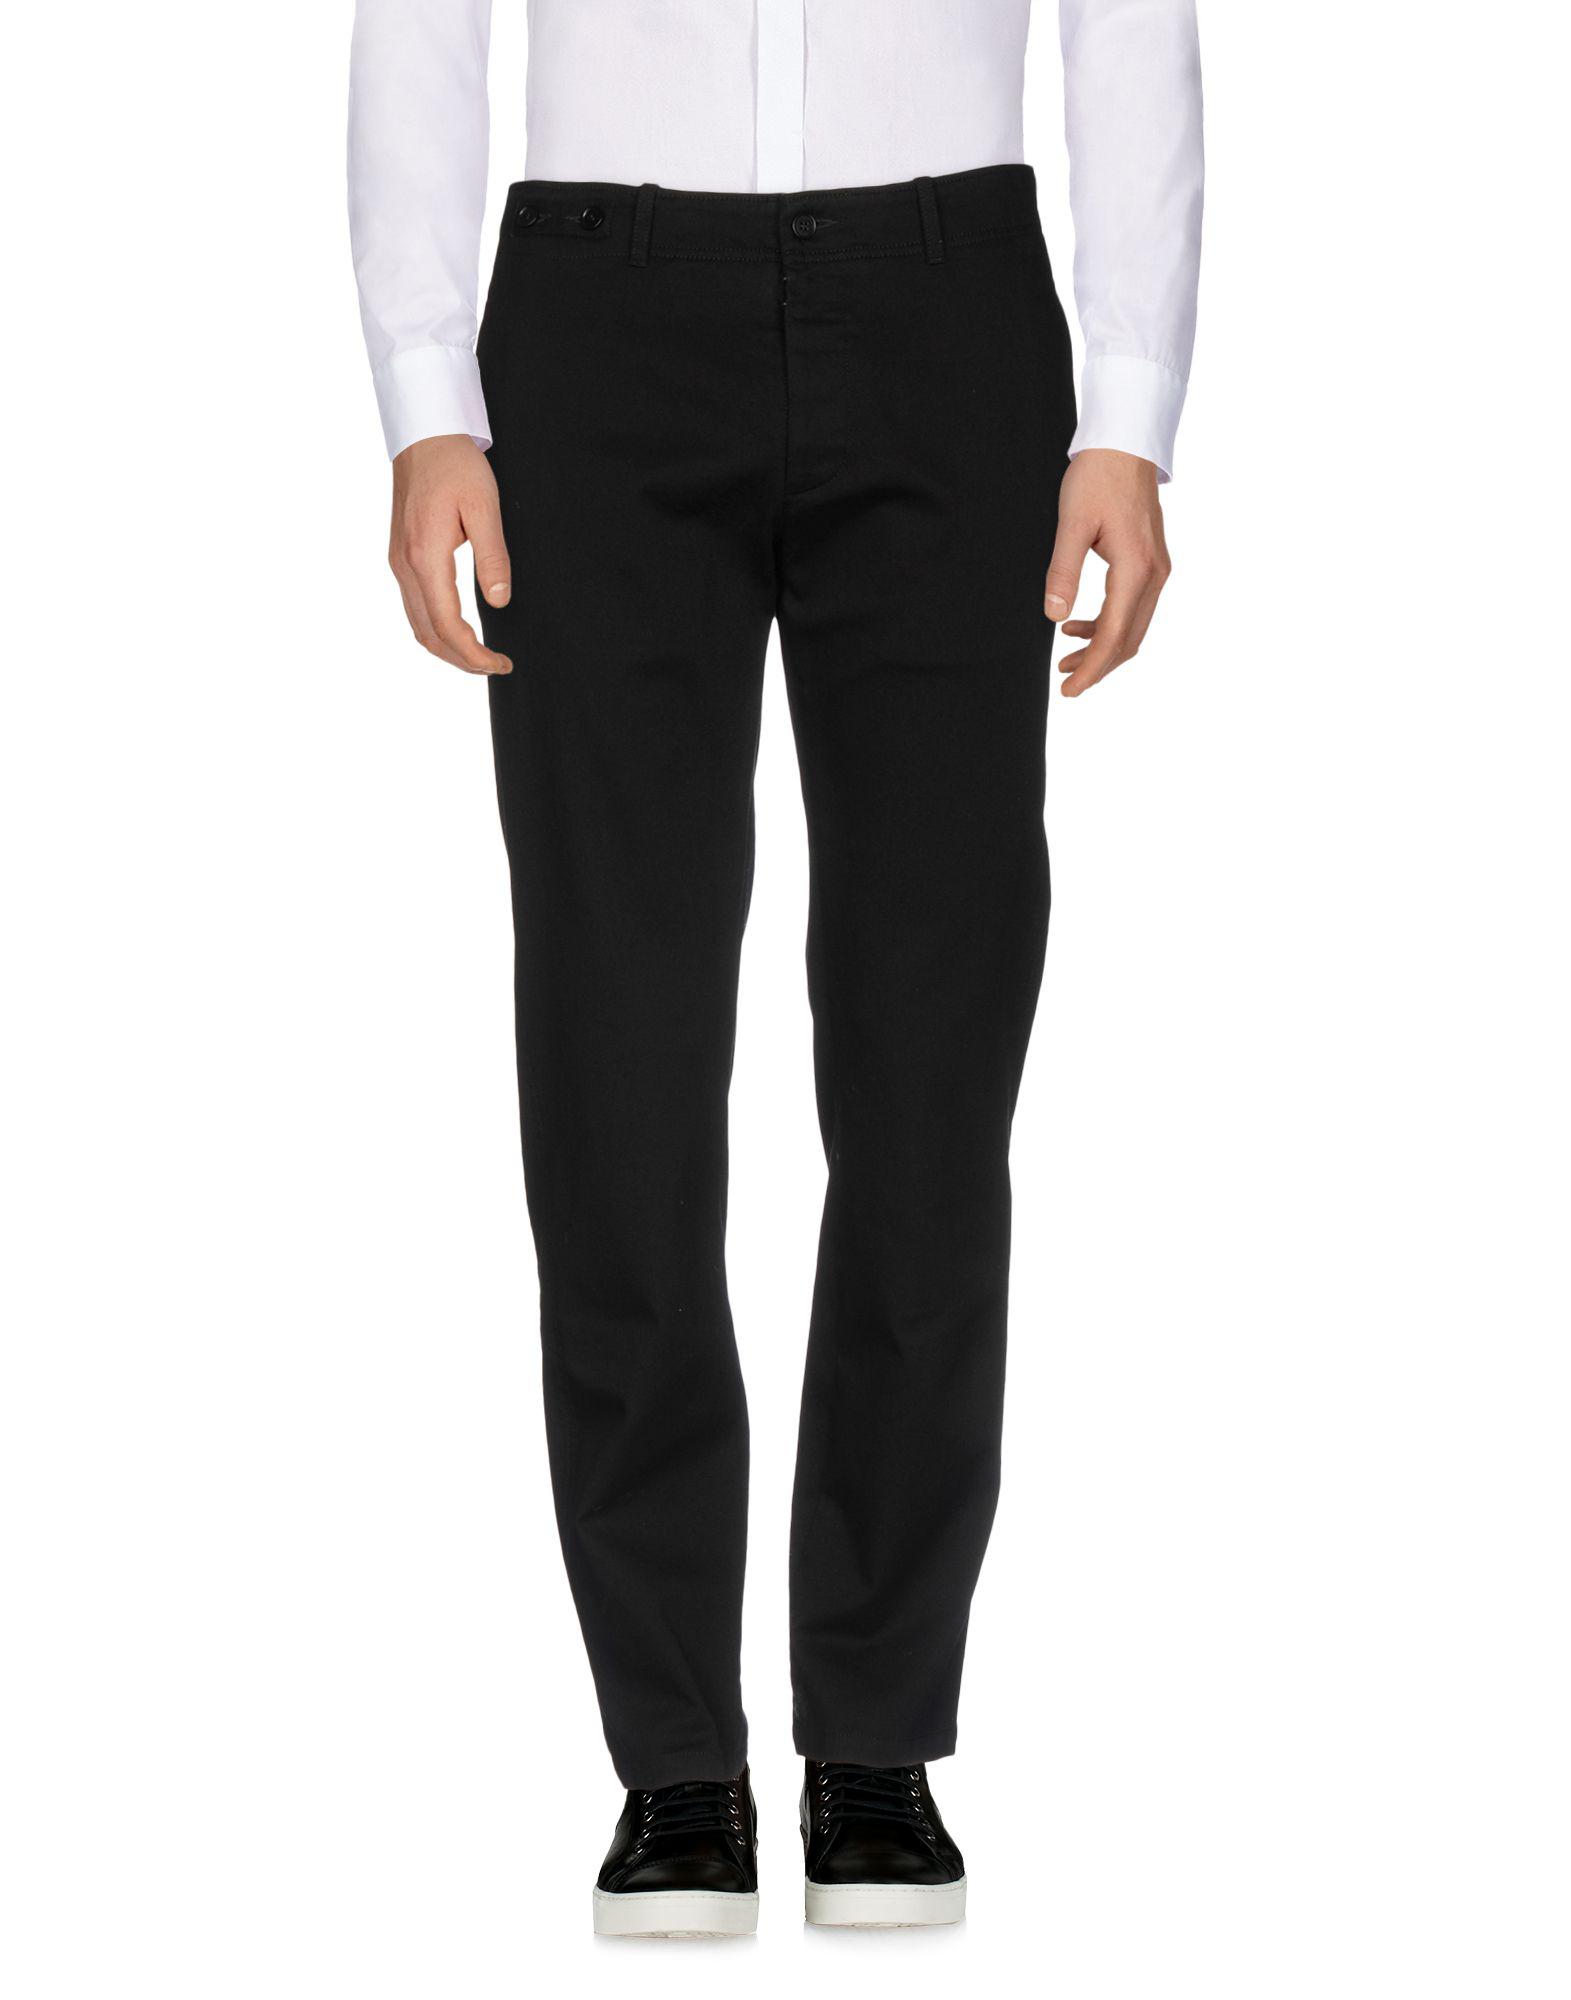 Maison Margiela Cotton Casual Pants in Black for Men - Lyst